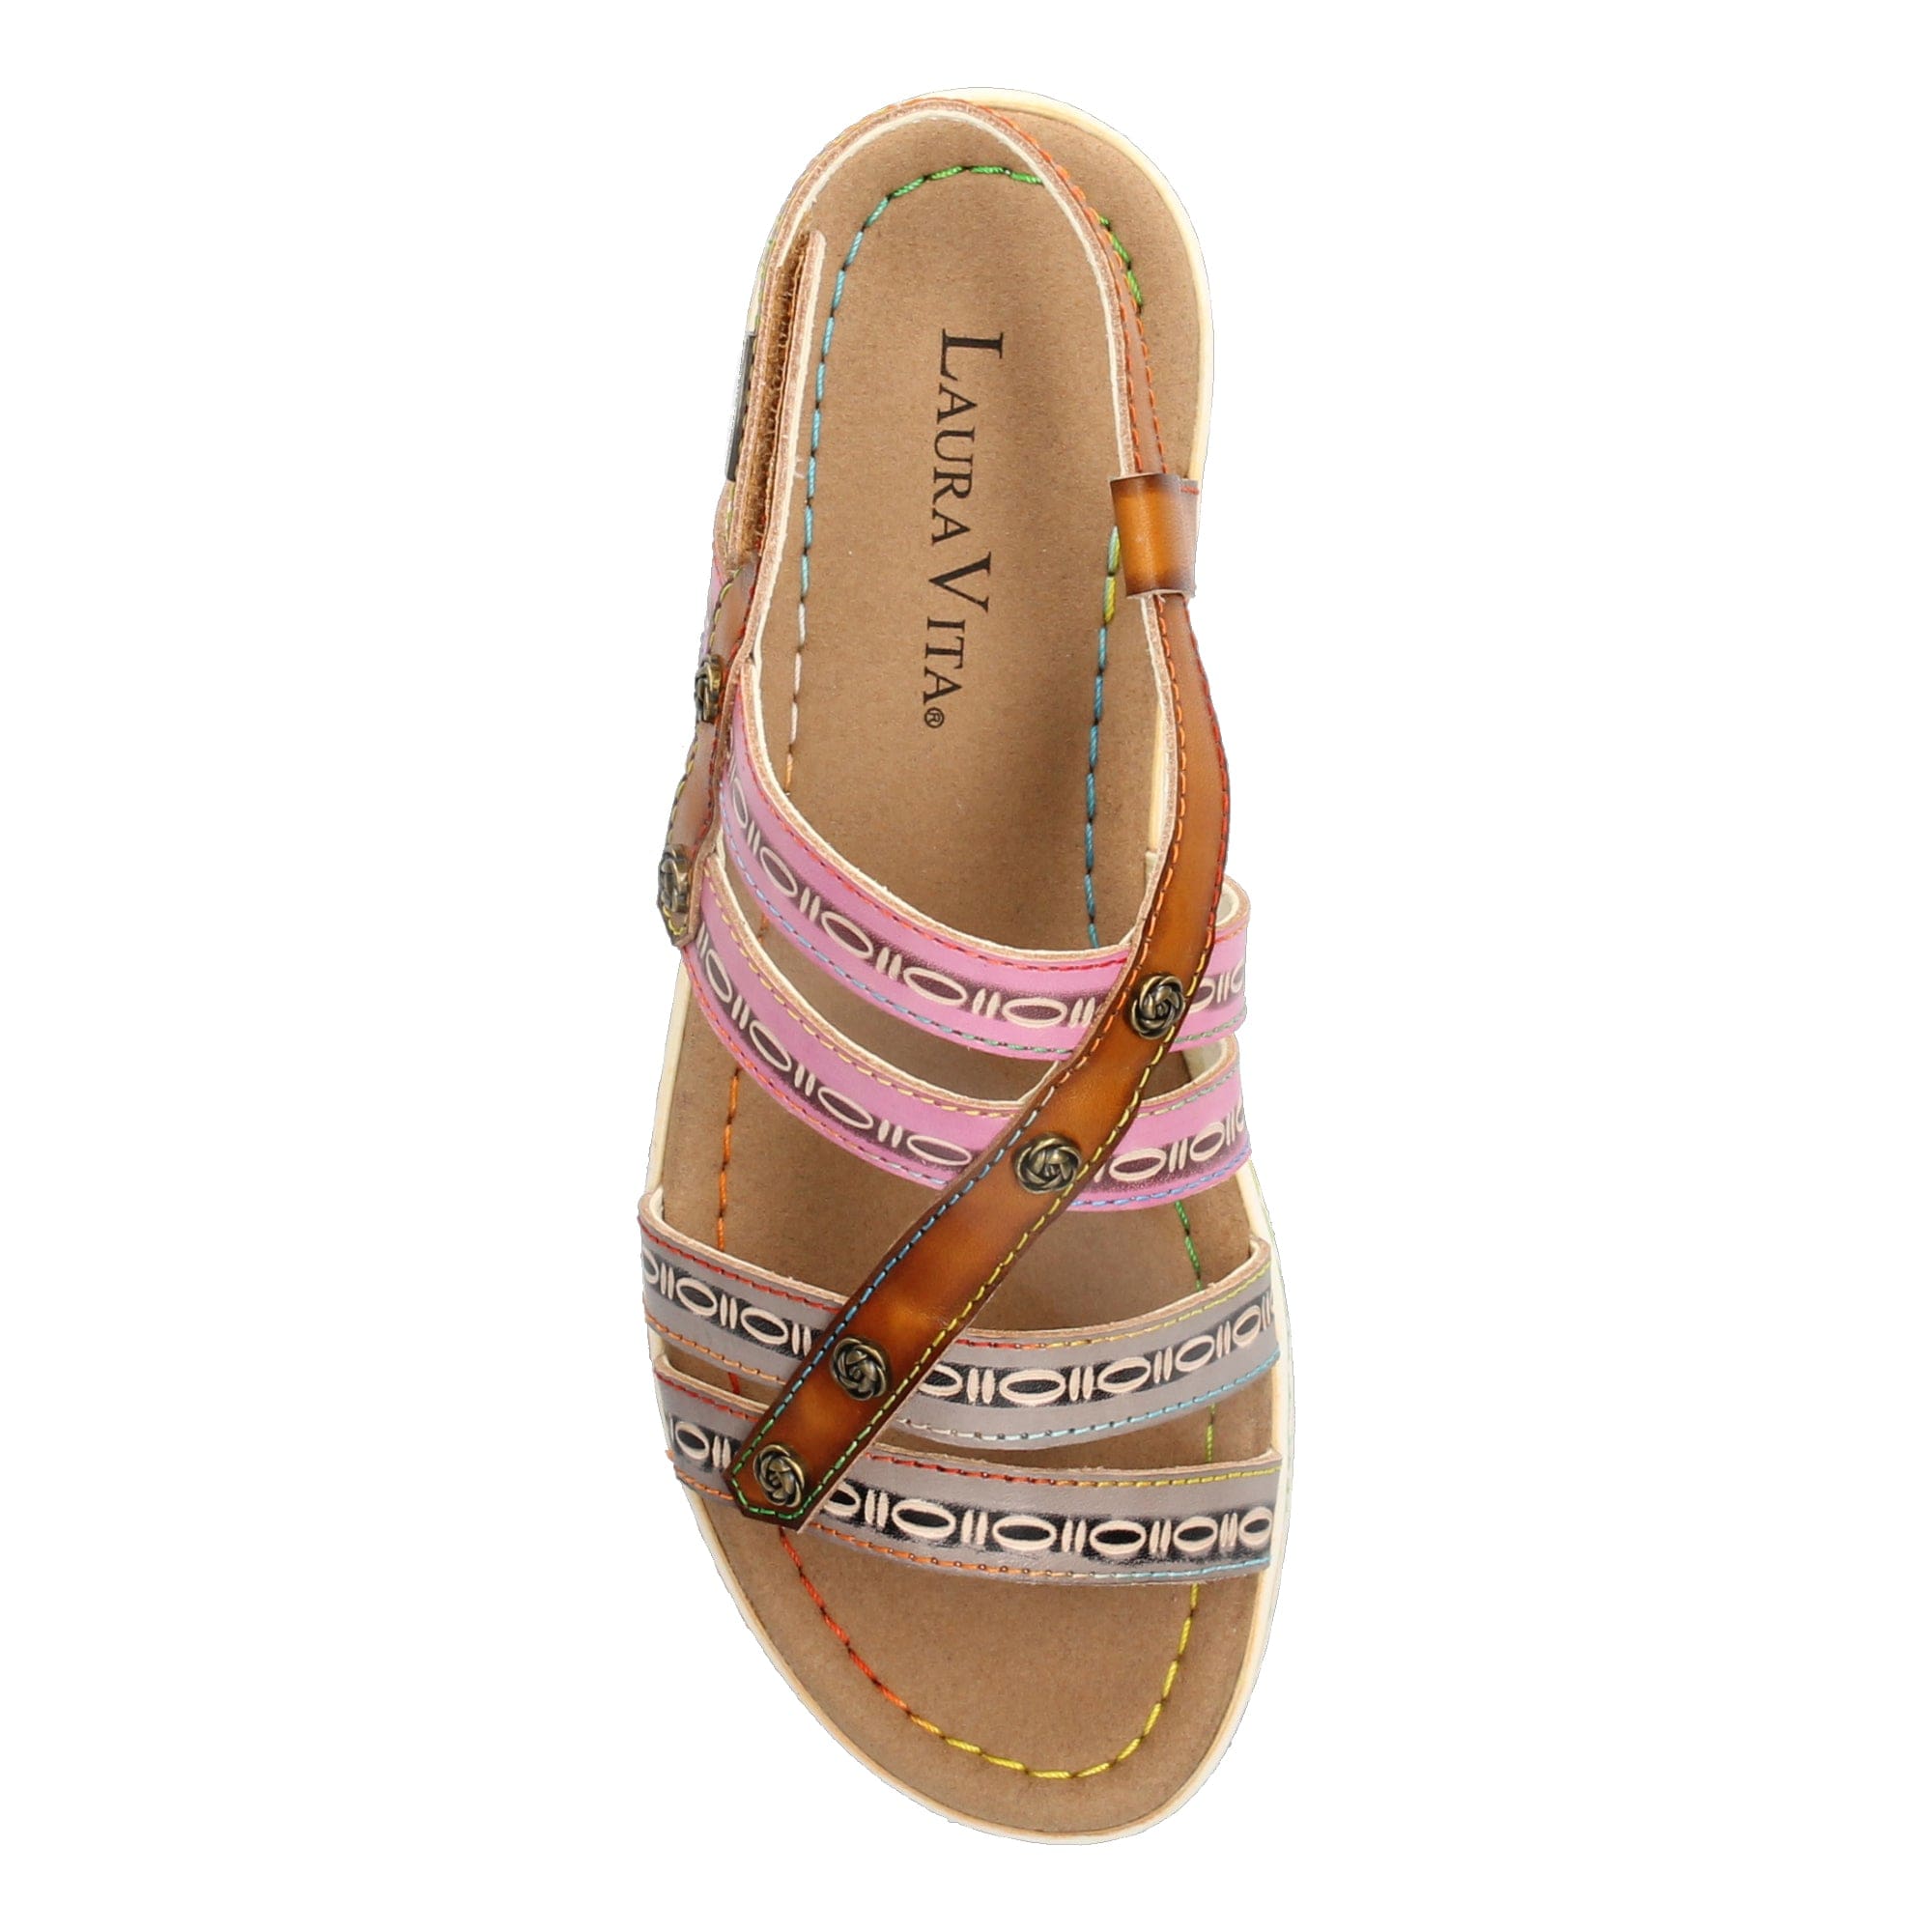 Schuh DICEZEO 0223 - Sandale